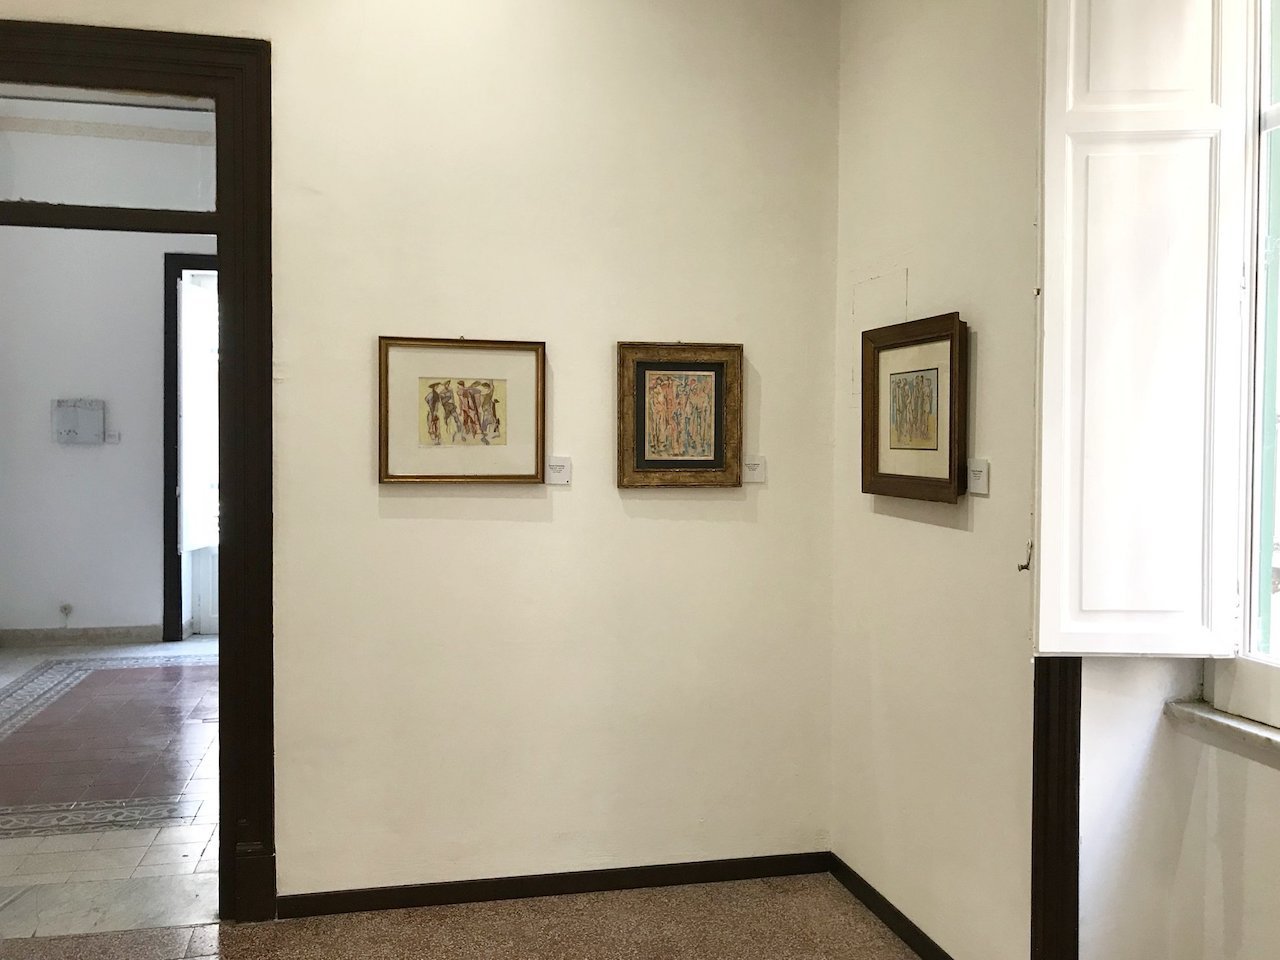 Galleria Lombardi e La Nica a Palermo